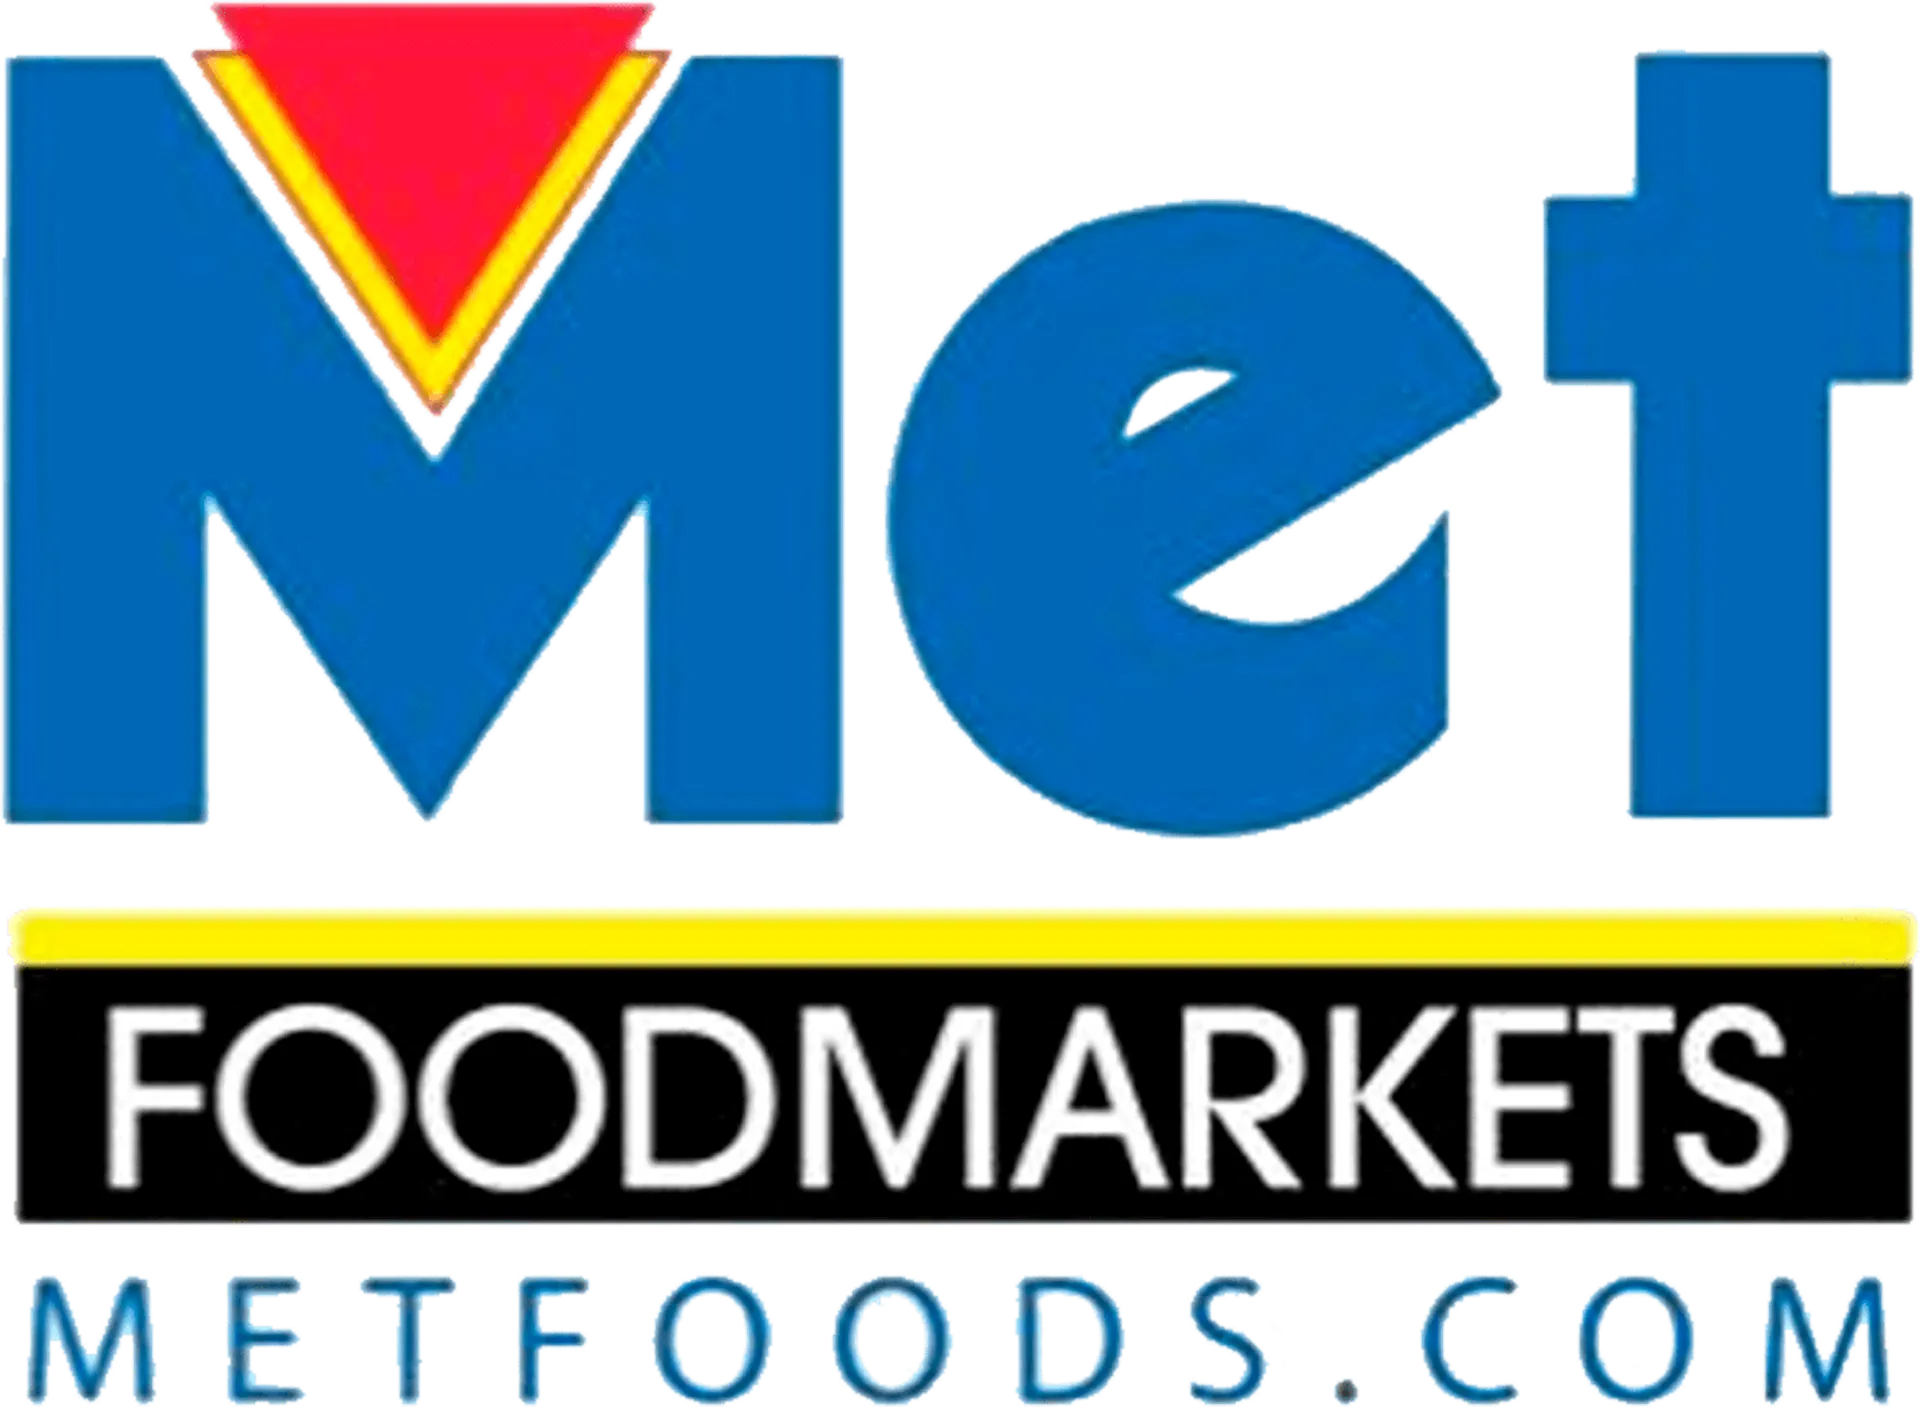 MET FOODMARKETS logo